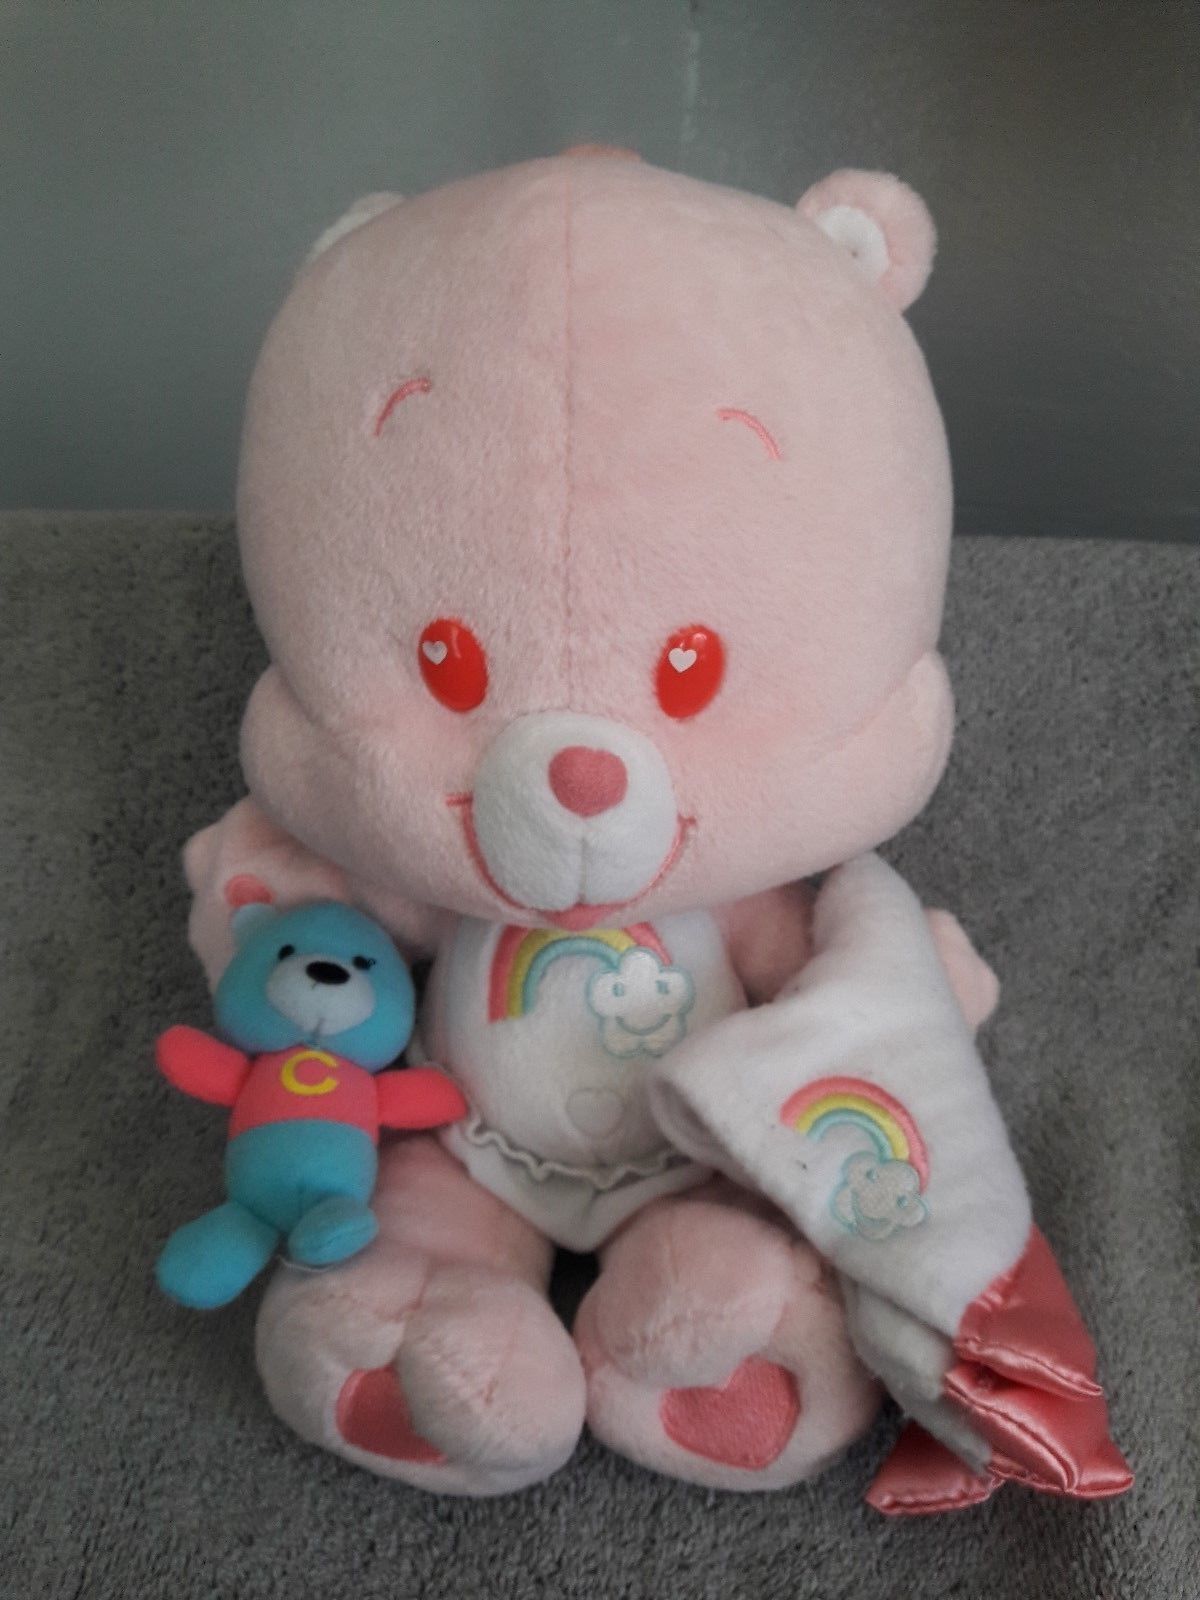 Care Bear Cub Cheer Bear Plush with Diaper, Blanket and Teddybear 12